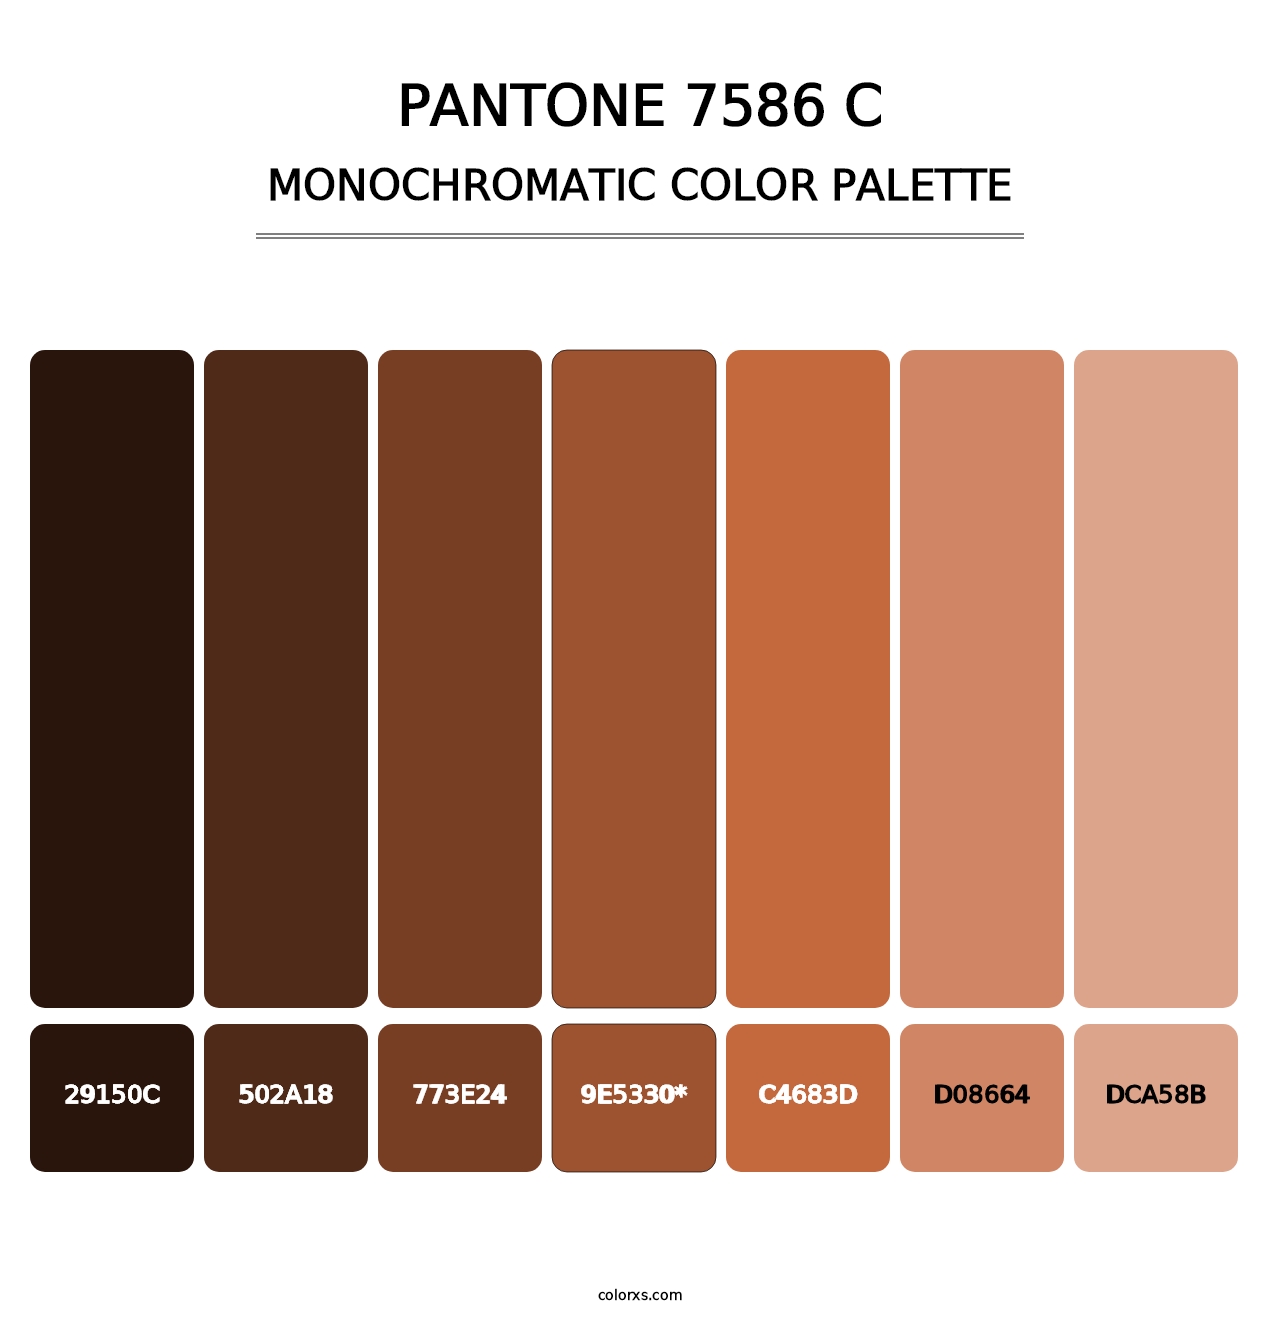 PANTONE 7586 C - Monochromatic Color Palette